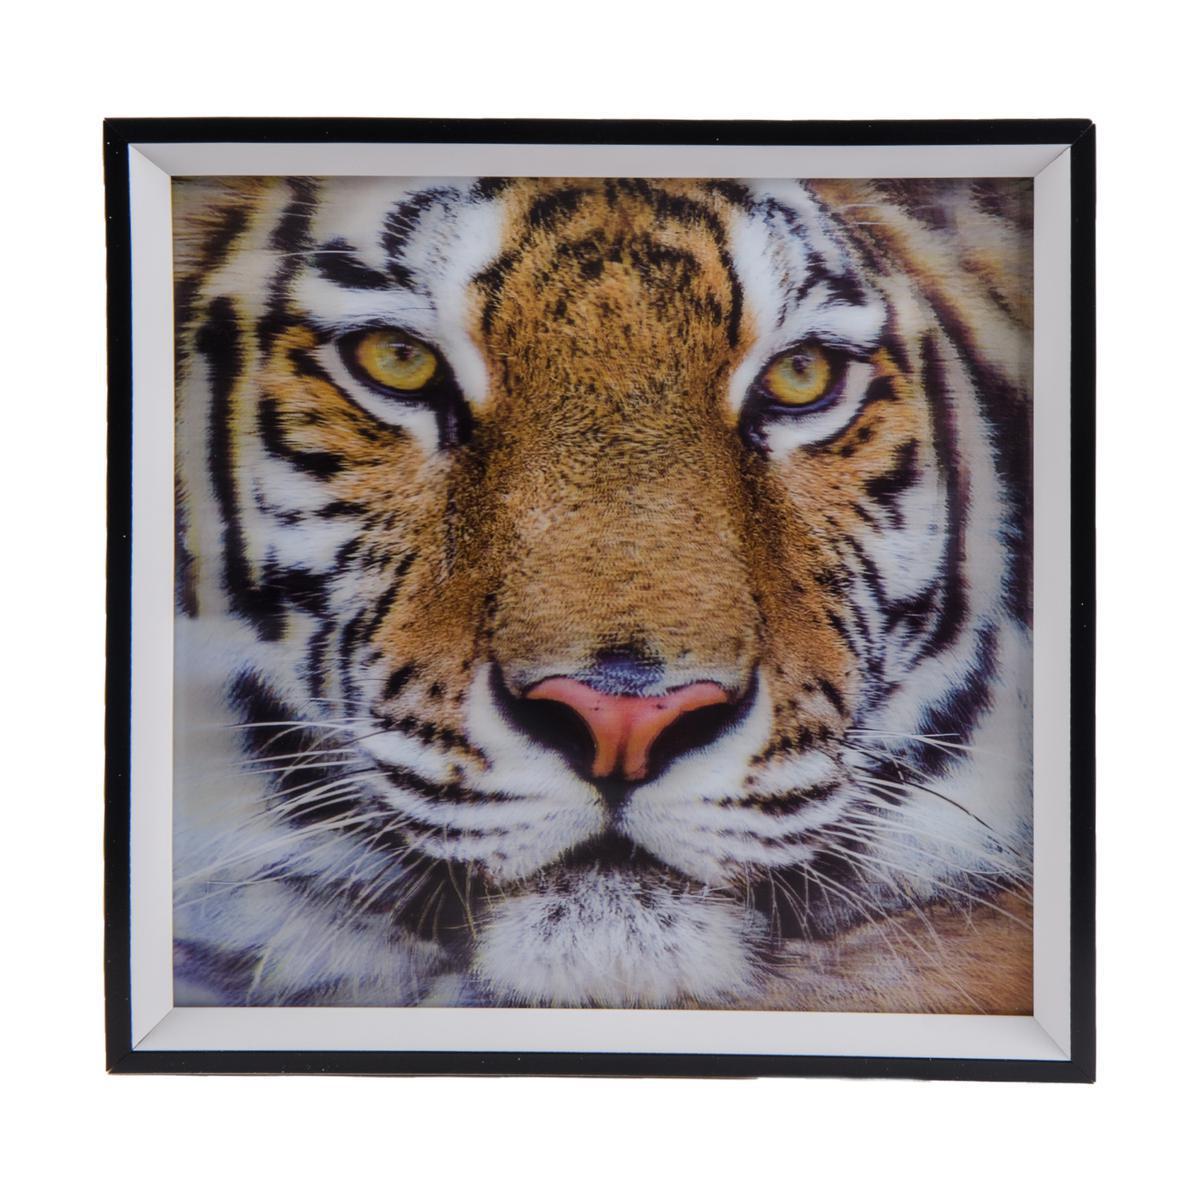 Image 3D encadré tigre en plastique - 33 x 33 cm - Multicolore